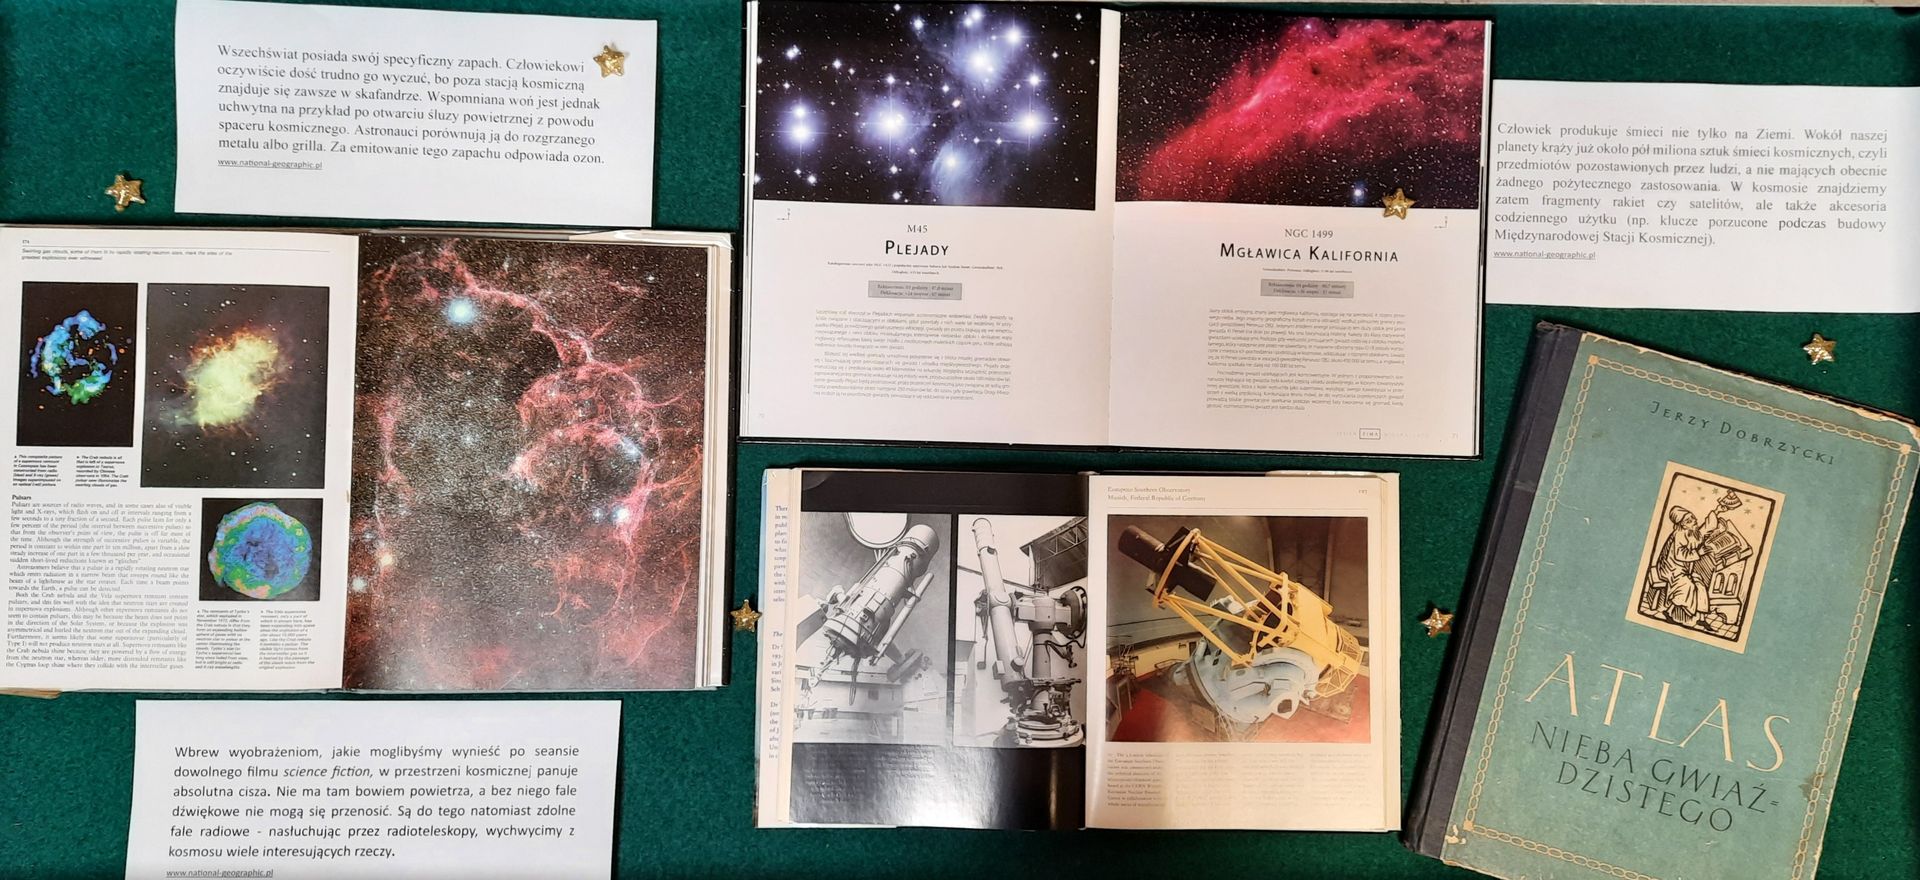 Książki z ciekawostkami astronomicznymi i wszechświatem